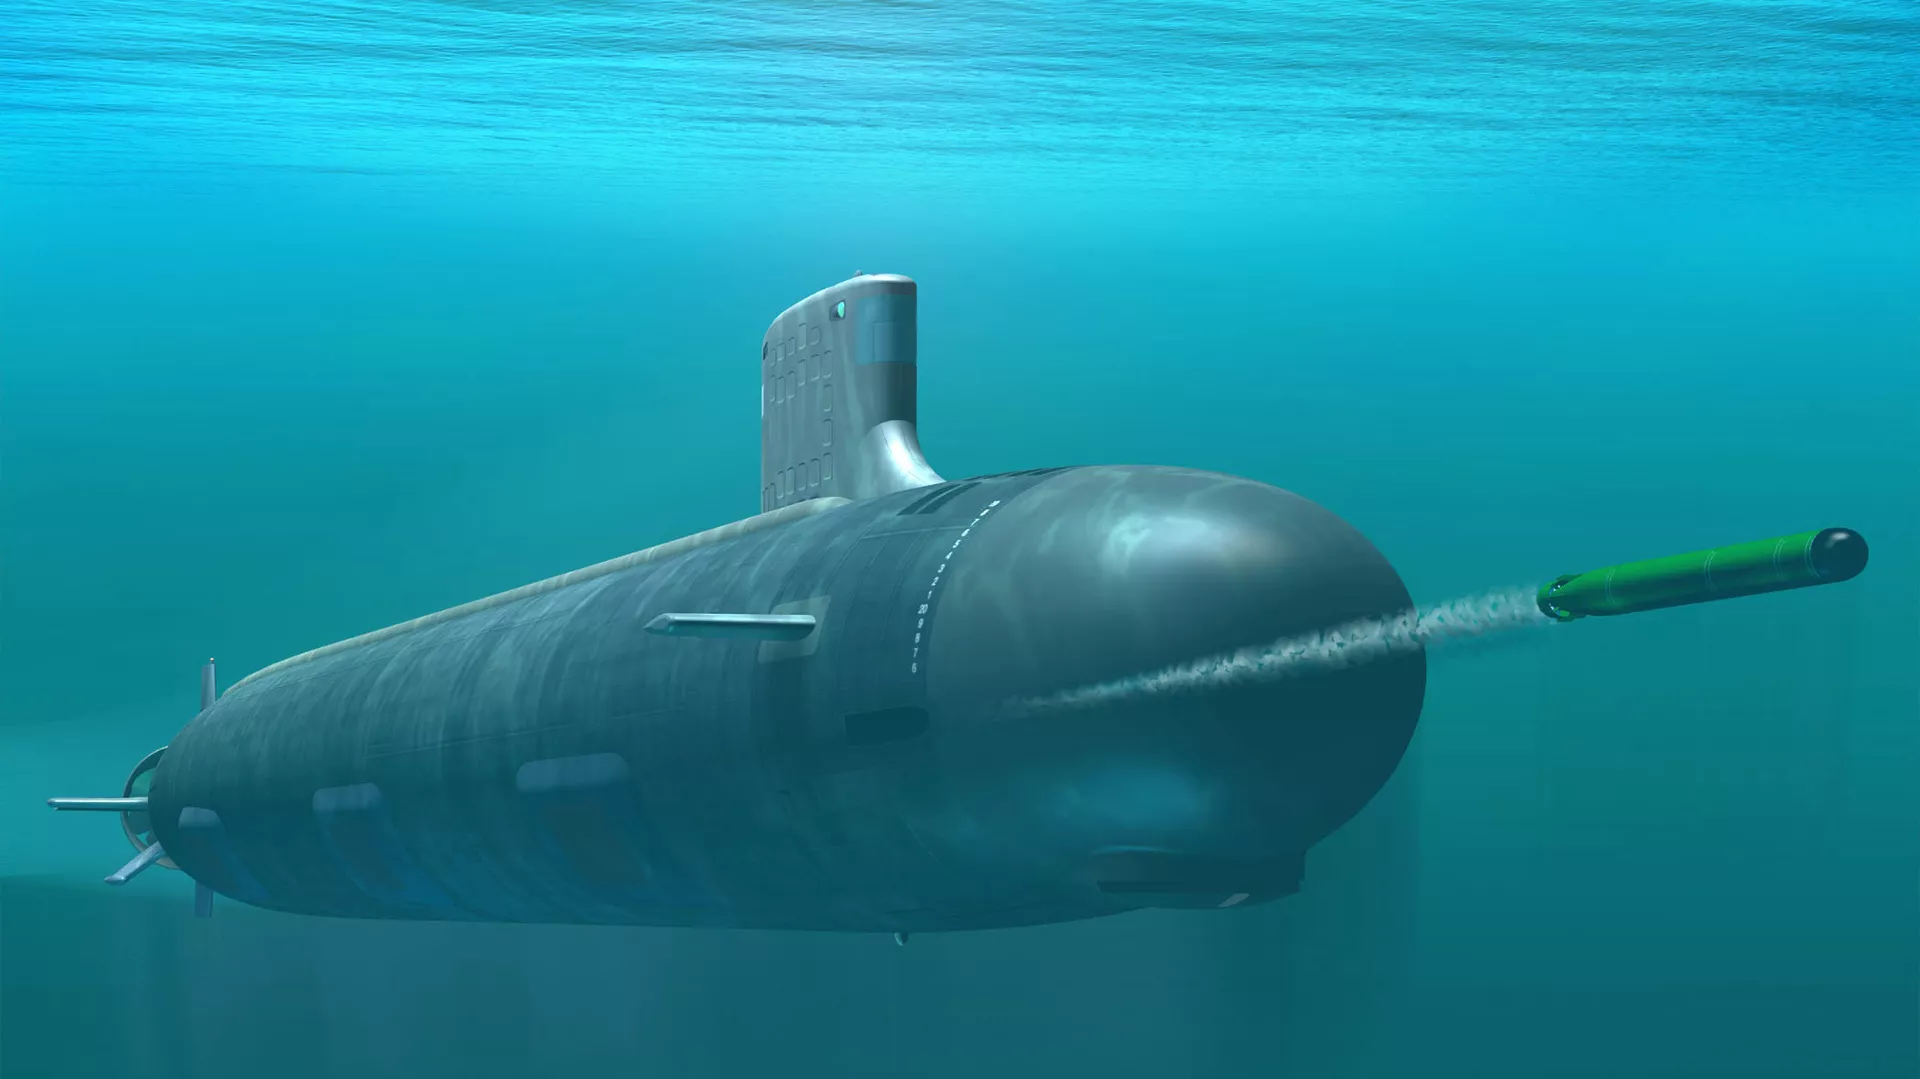  Australia ‘vomita su independencia’ comprando submarinos nucleares estadounidenses, dice académico